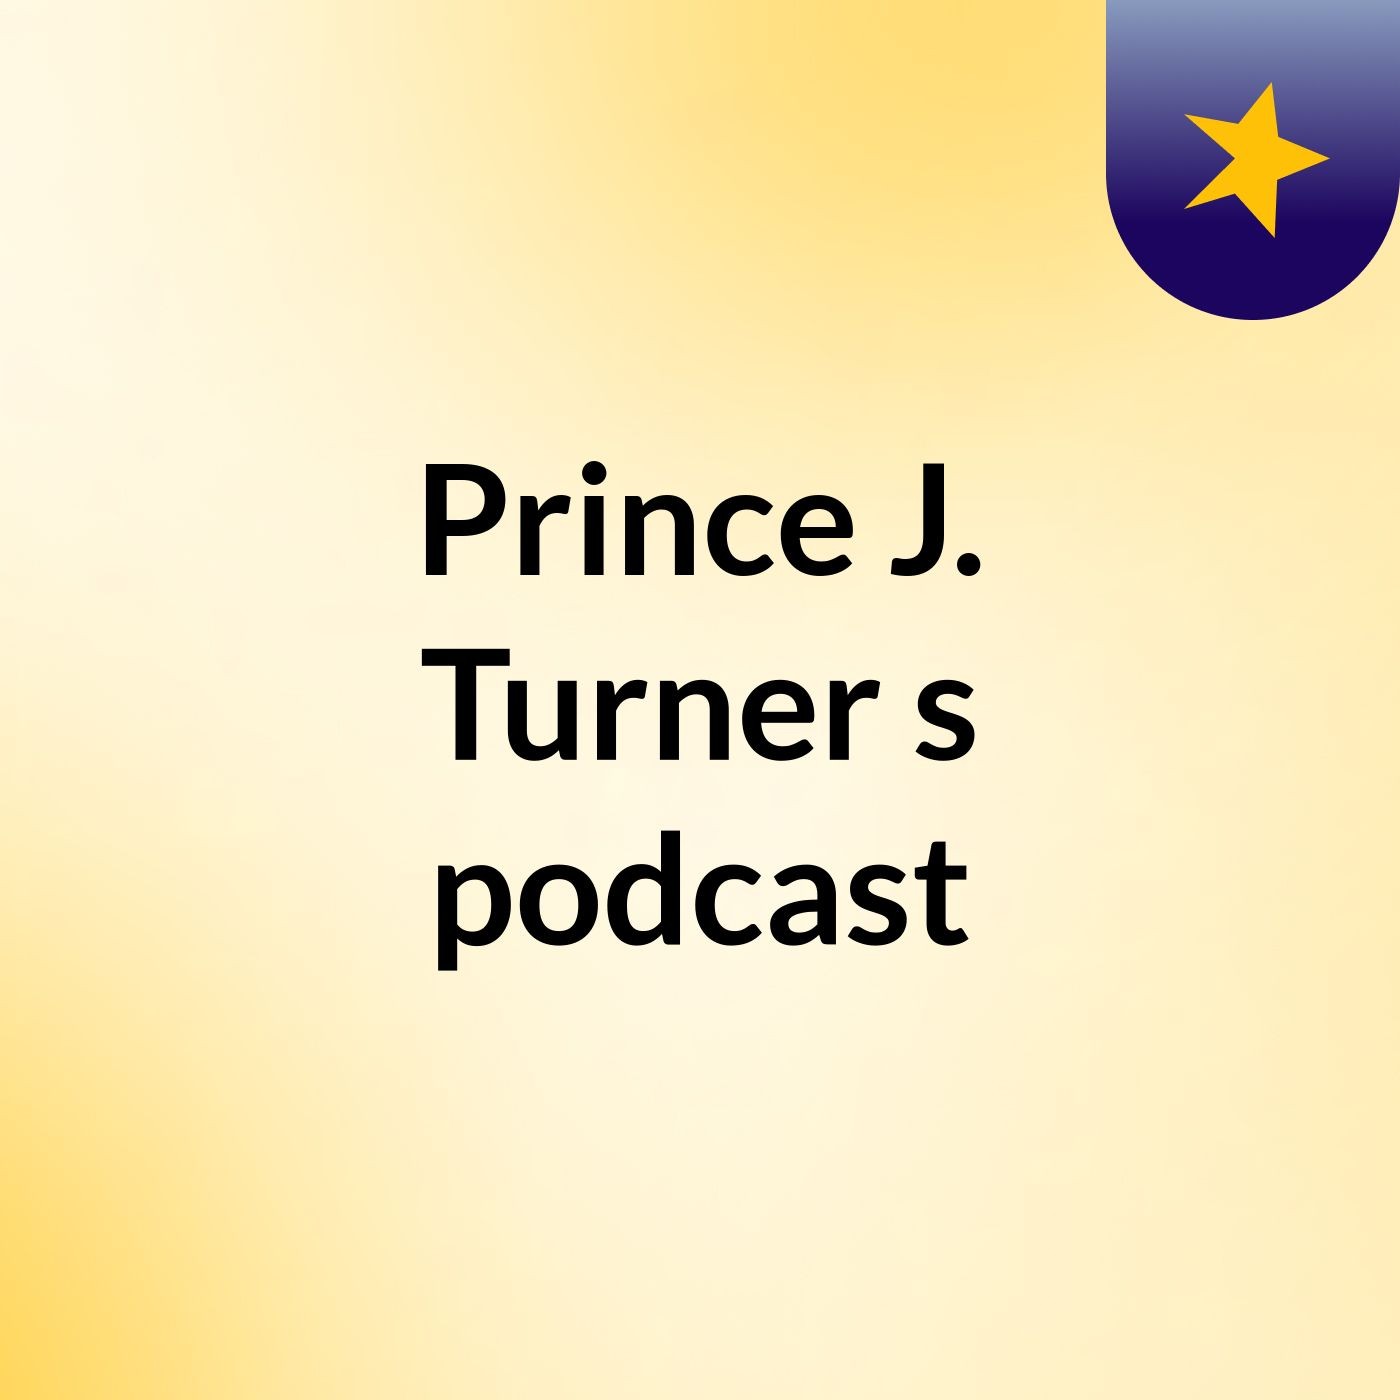 Episode 2 - Prince J. Turner's podcast